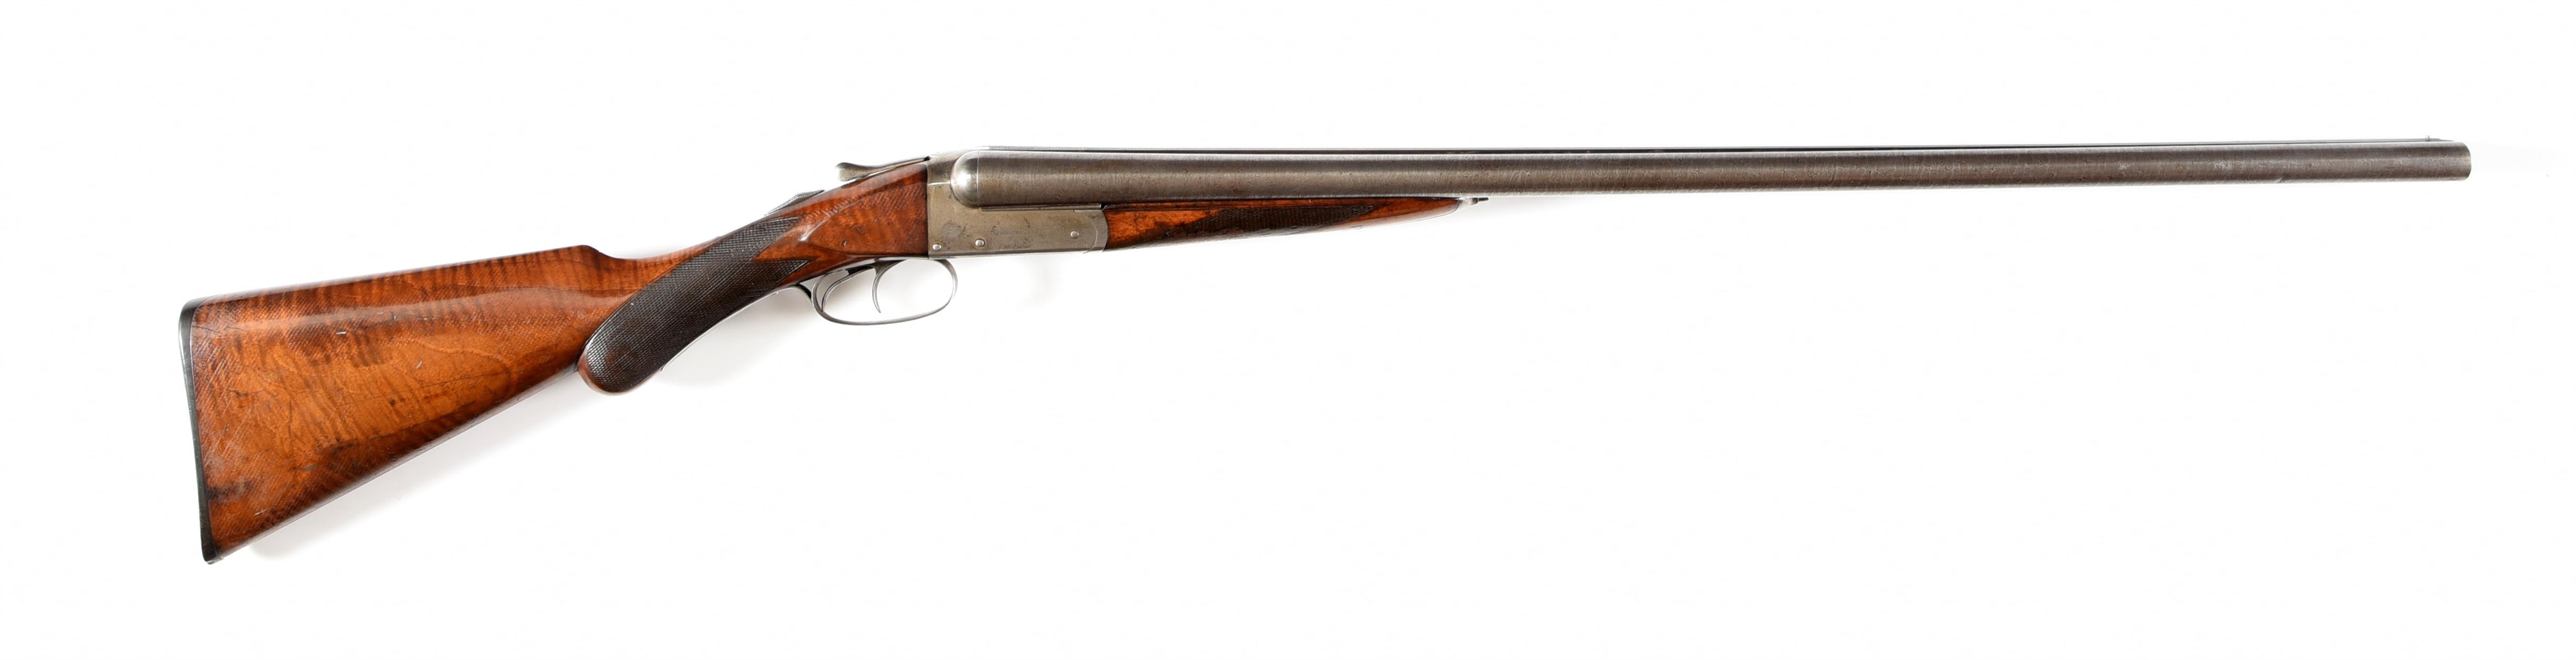 (A) REMINGTON MODEL 1894 SIDE BY SIDE SHOTGUN